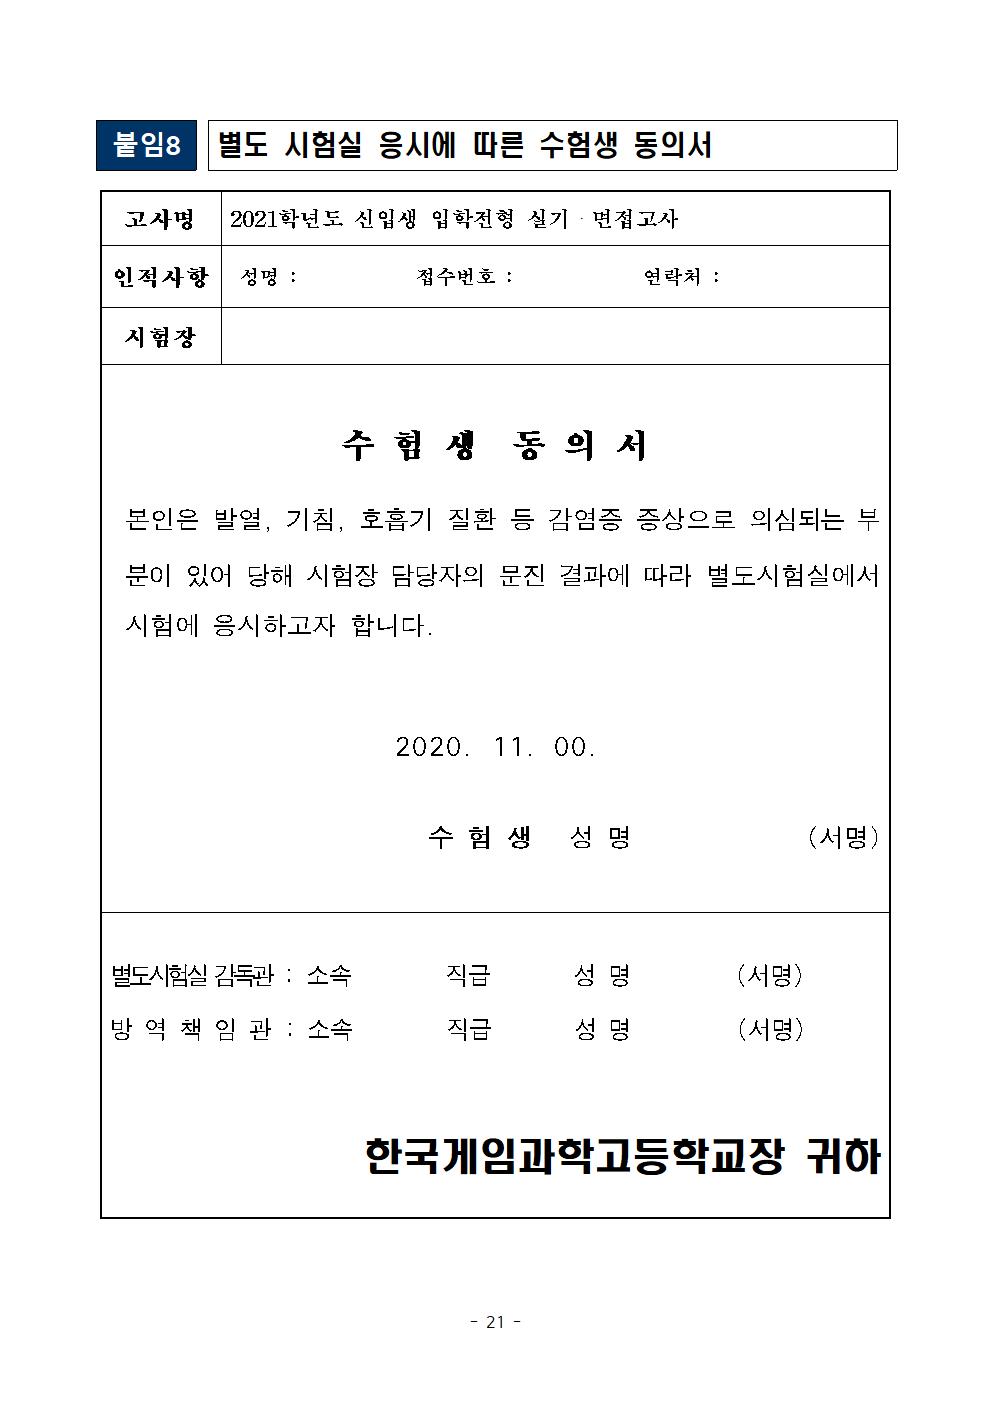 2021학년도 학교별 입학전형 안전관리 계획_한국게임과학고(홈페이지게시)023